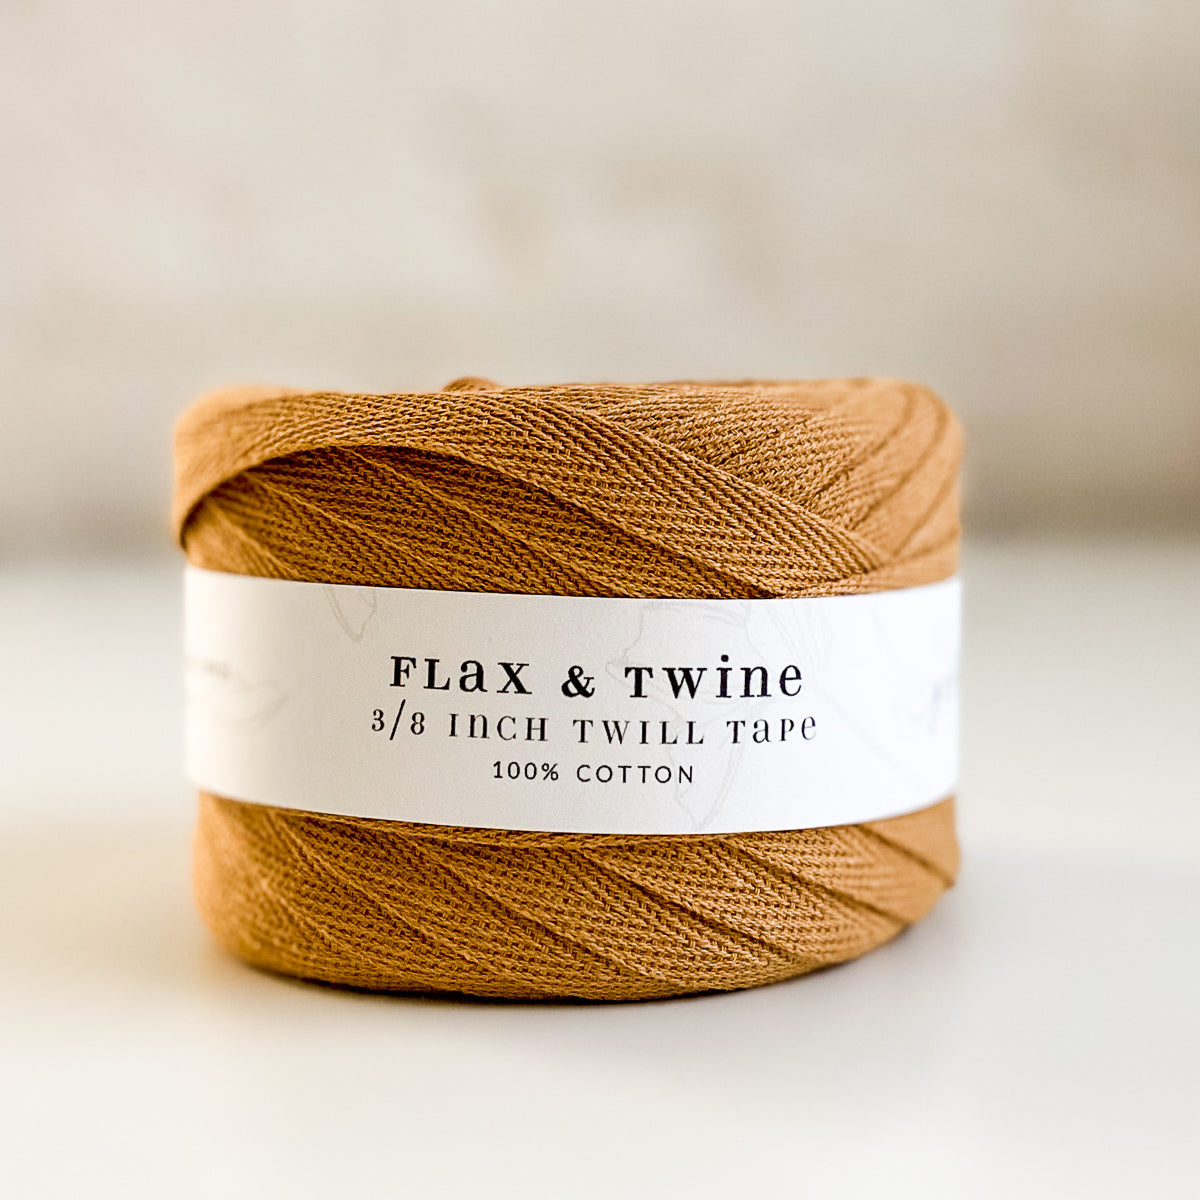 Flax & Twine Cotton Twill Tape (3/8)